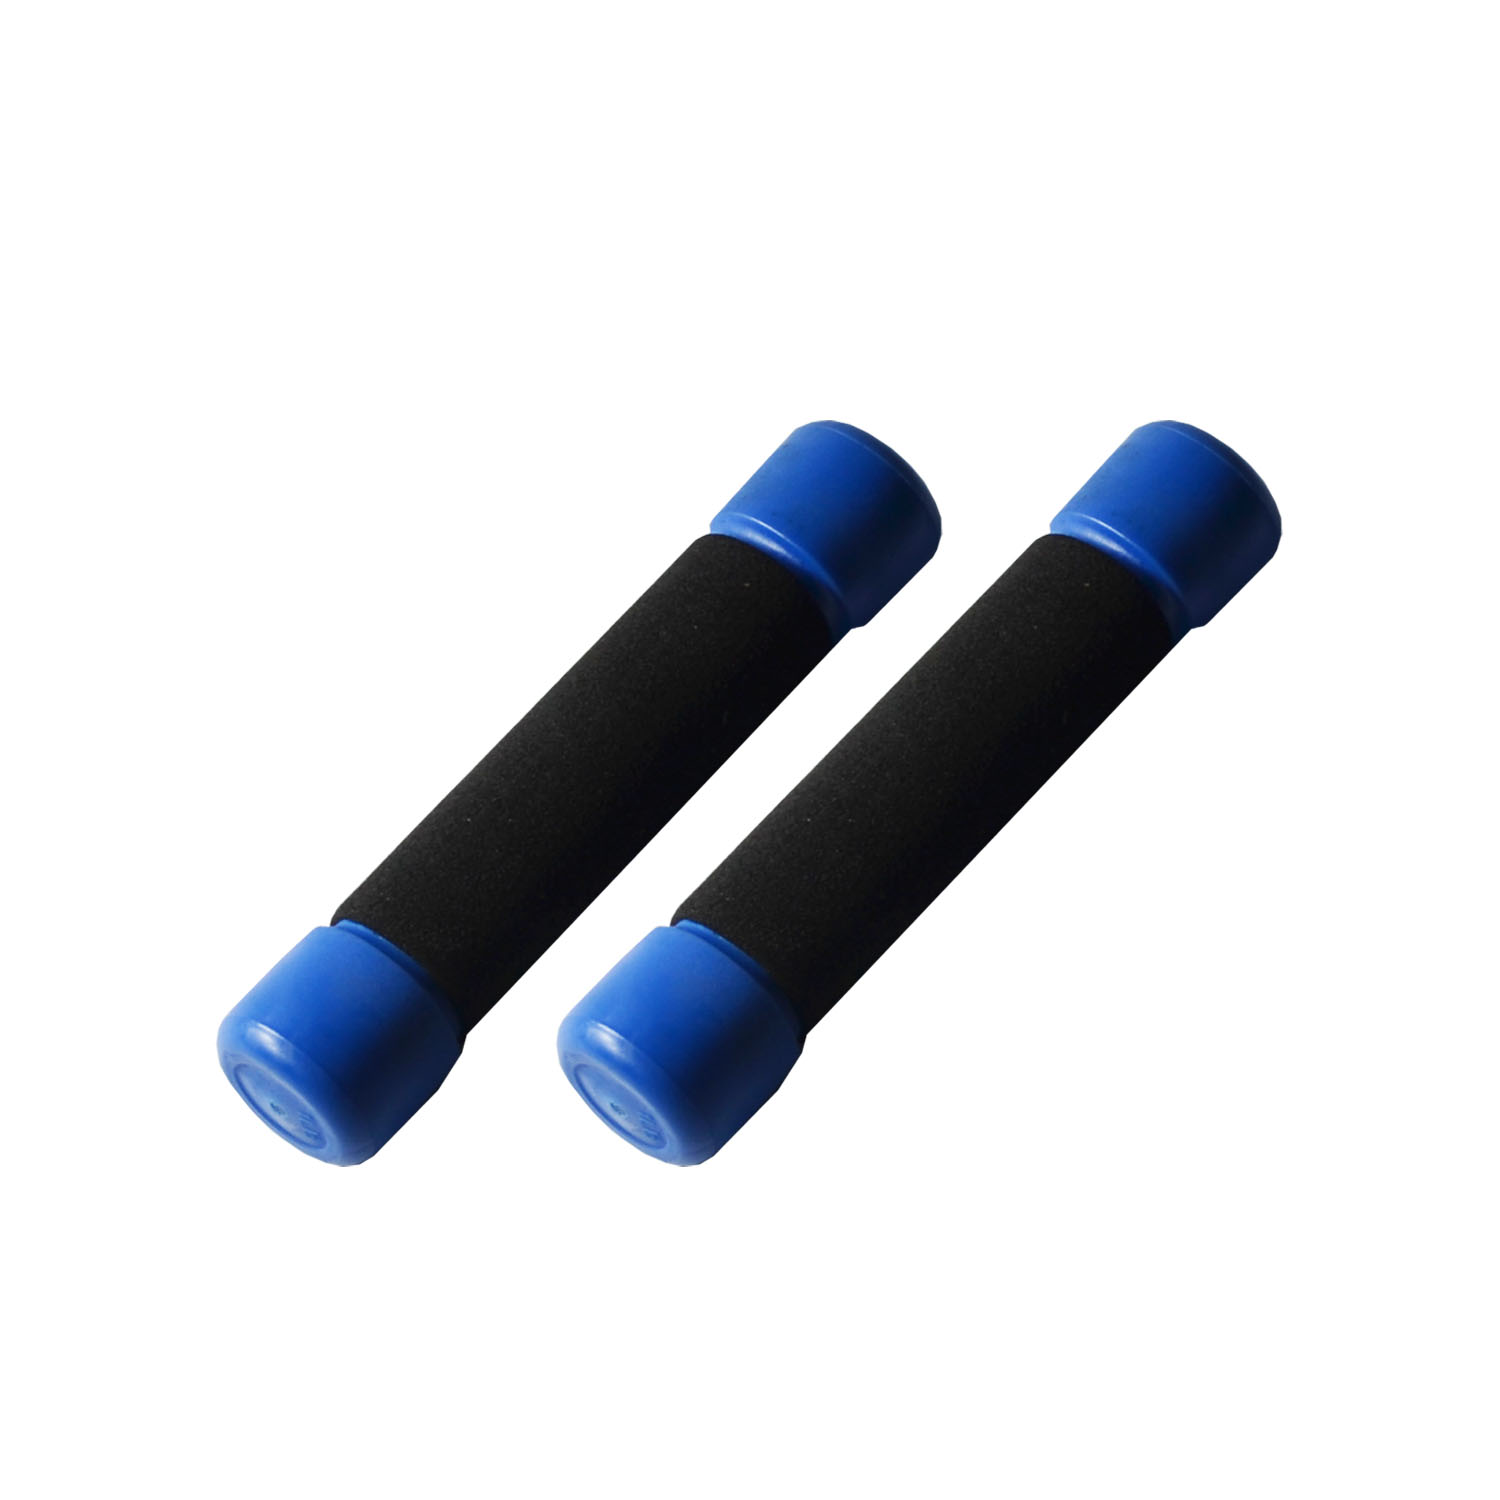 ดัมเบล 1 LB (0.5 kg) 1 คู่ (สีน้ำเงิน) / Pair of Dumbbell 1 LB (0.5 kg) - Blue